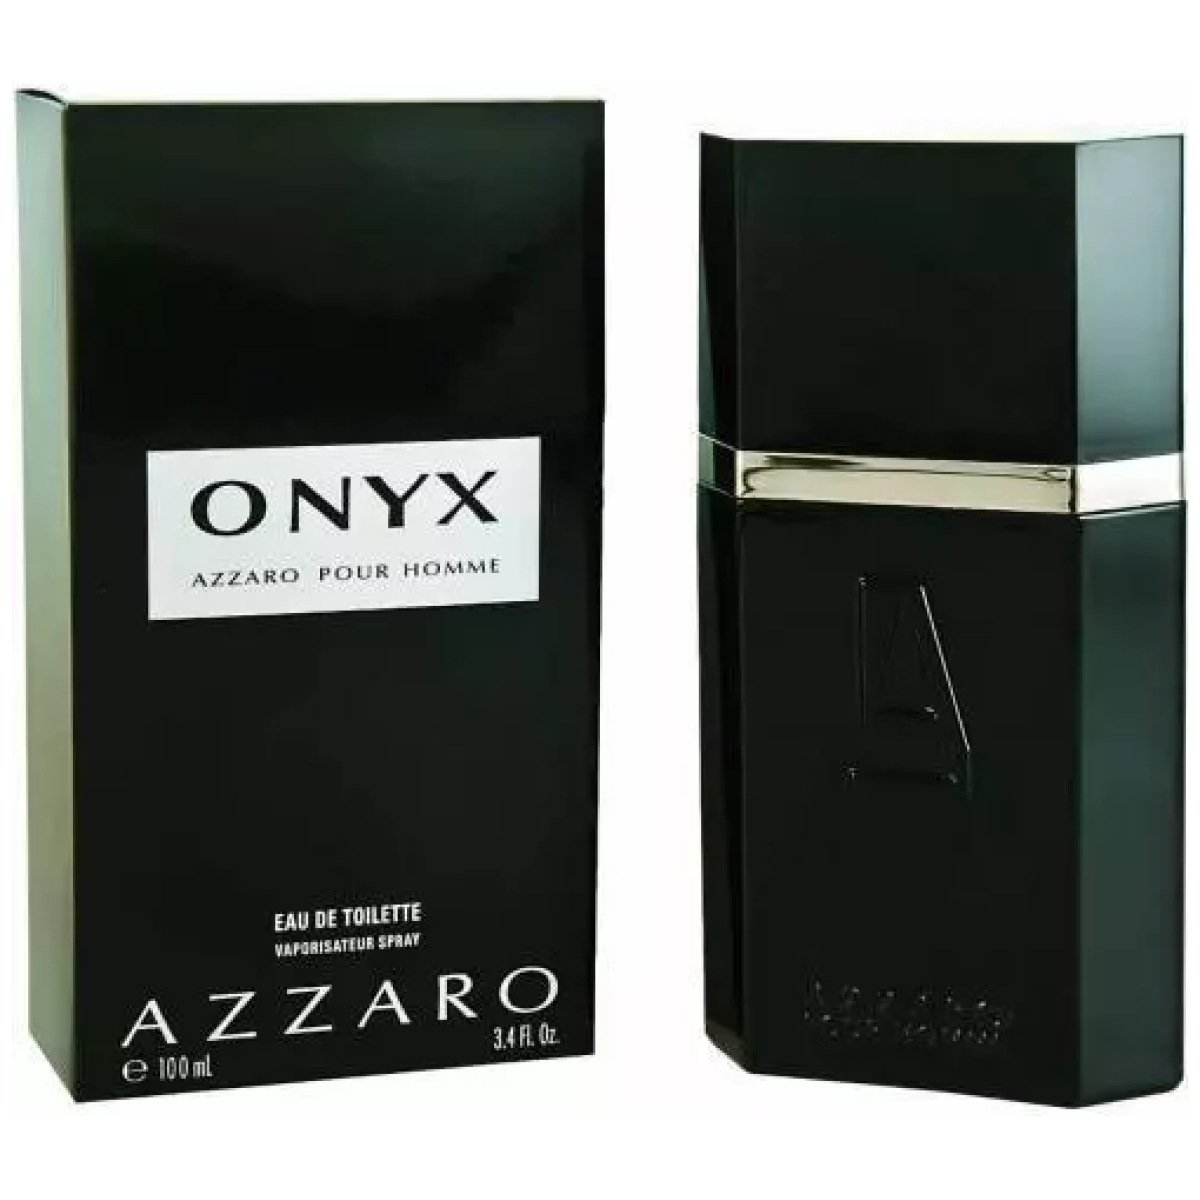 Azzaro Pour Homme Onyx EDT Perfume For Men 100ml